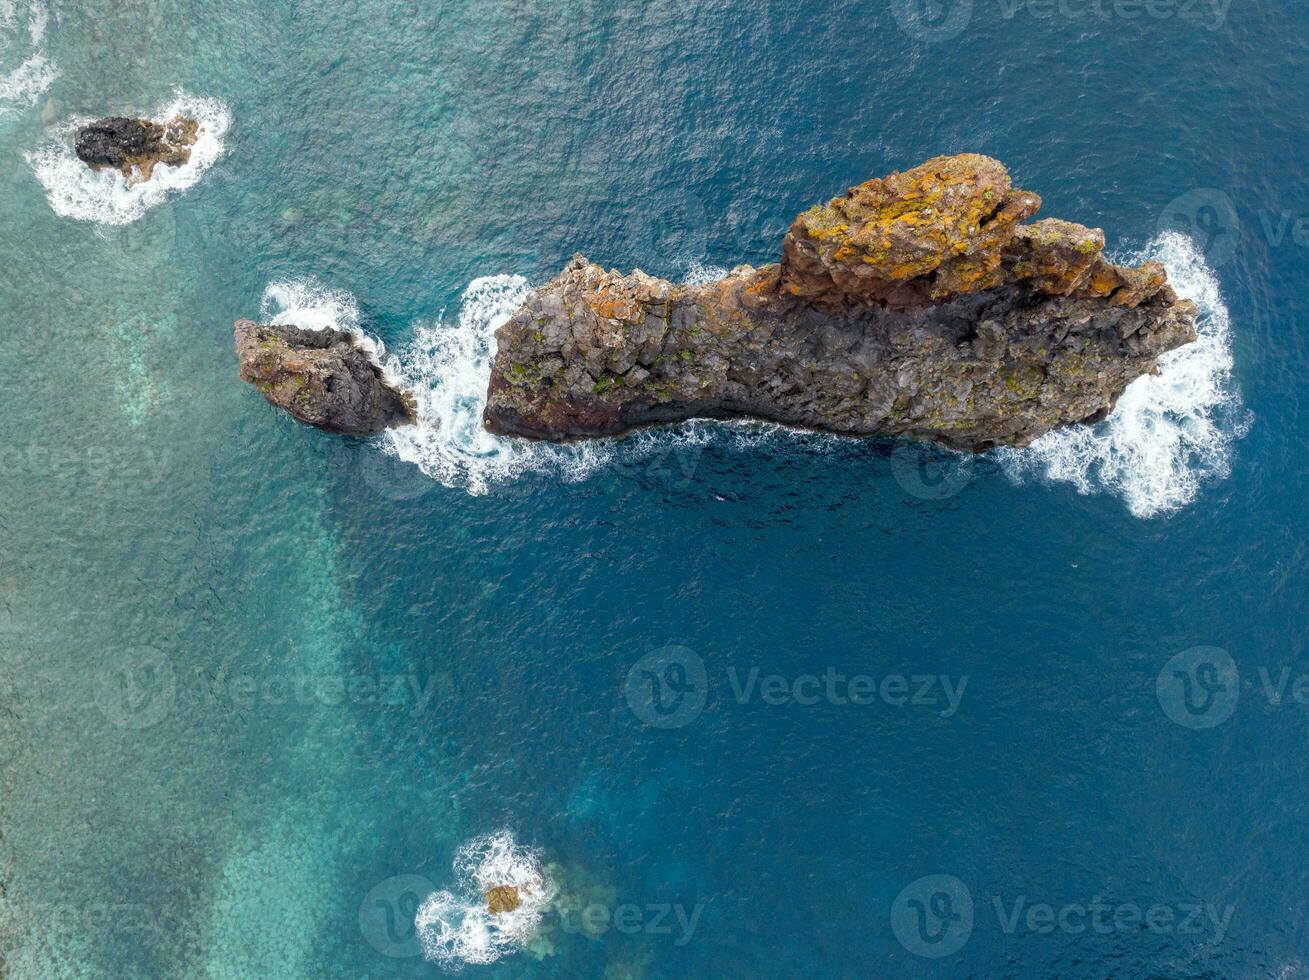 miradouro ilheus da Ribeira da Janela - - Madeira Insel - - Portugal foto